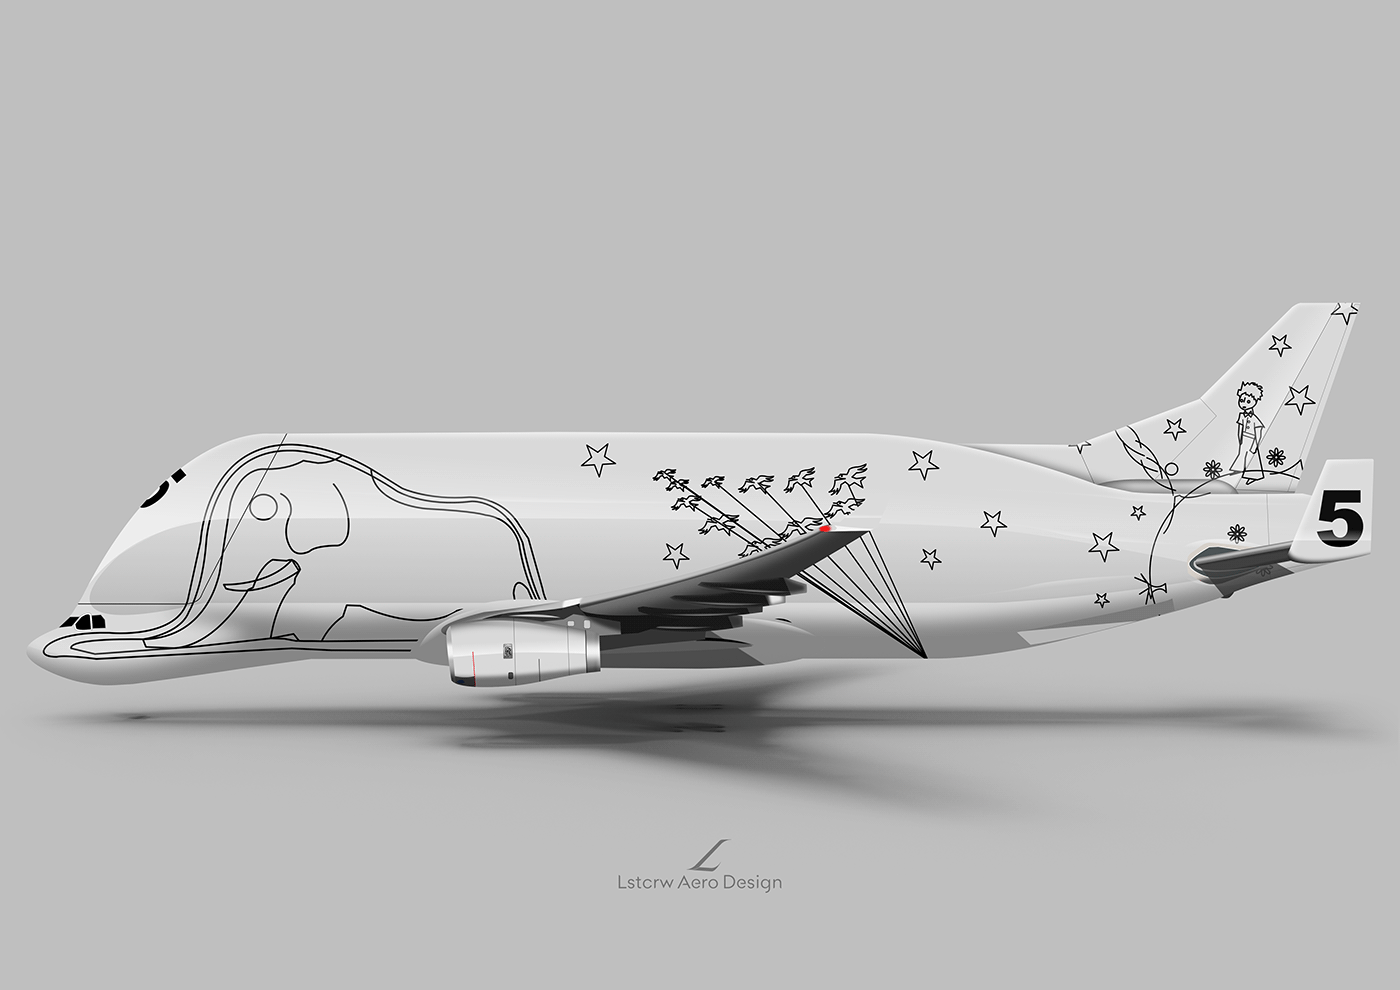 Airbus beluga beluga XL nasa orca